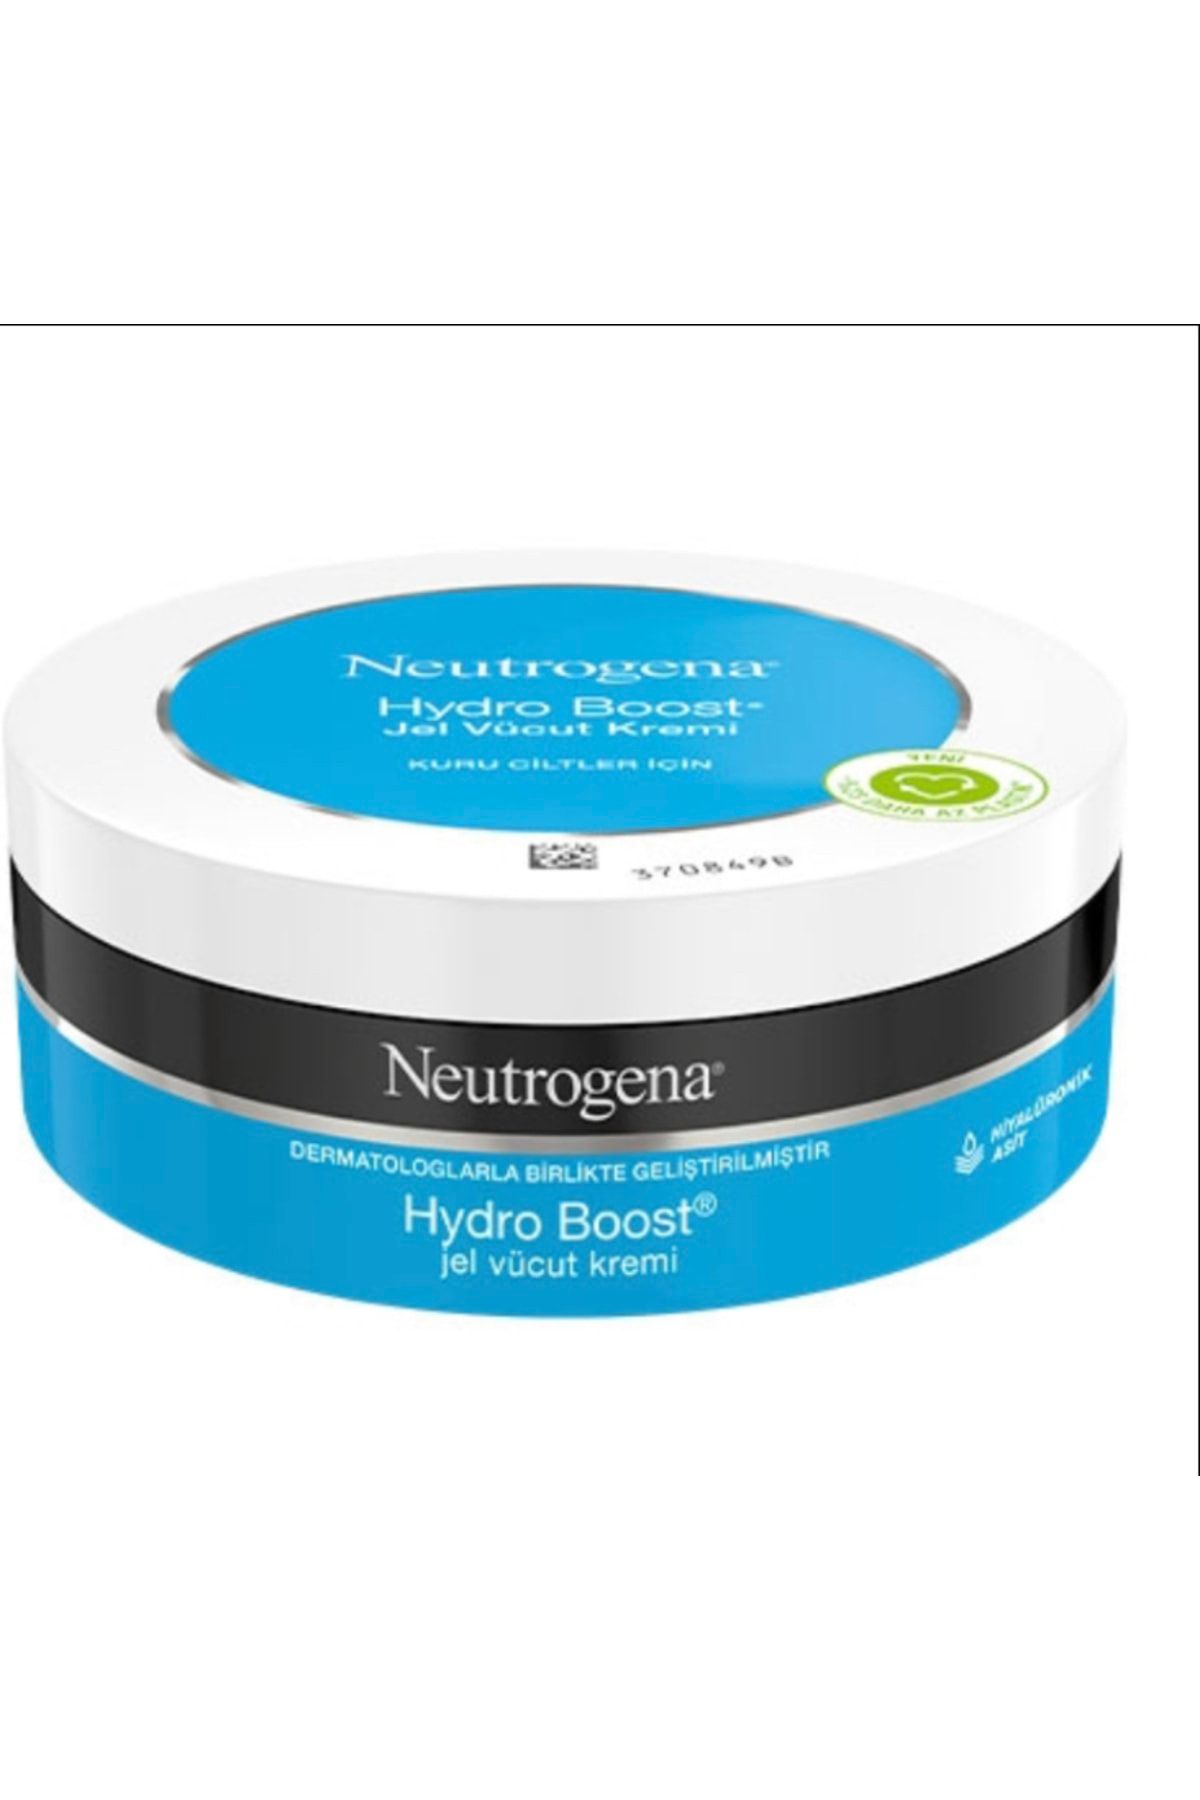 Neutrogena Hydro Boost 200ml Kuru Ciltler Için Yüz Ve Vücut Jel Kremi Yeni Seri